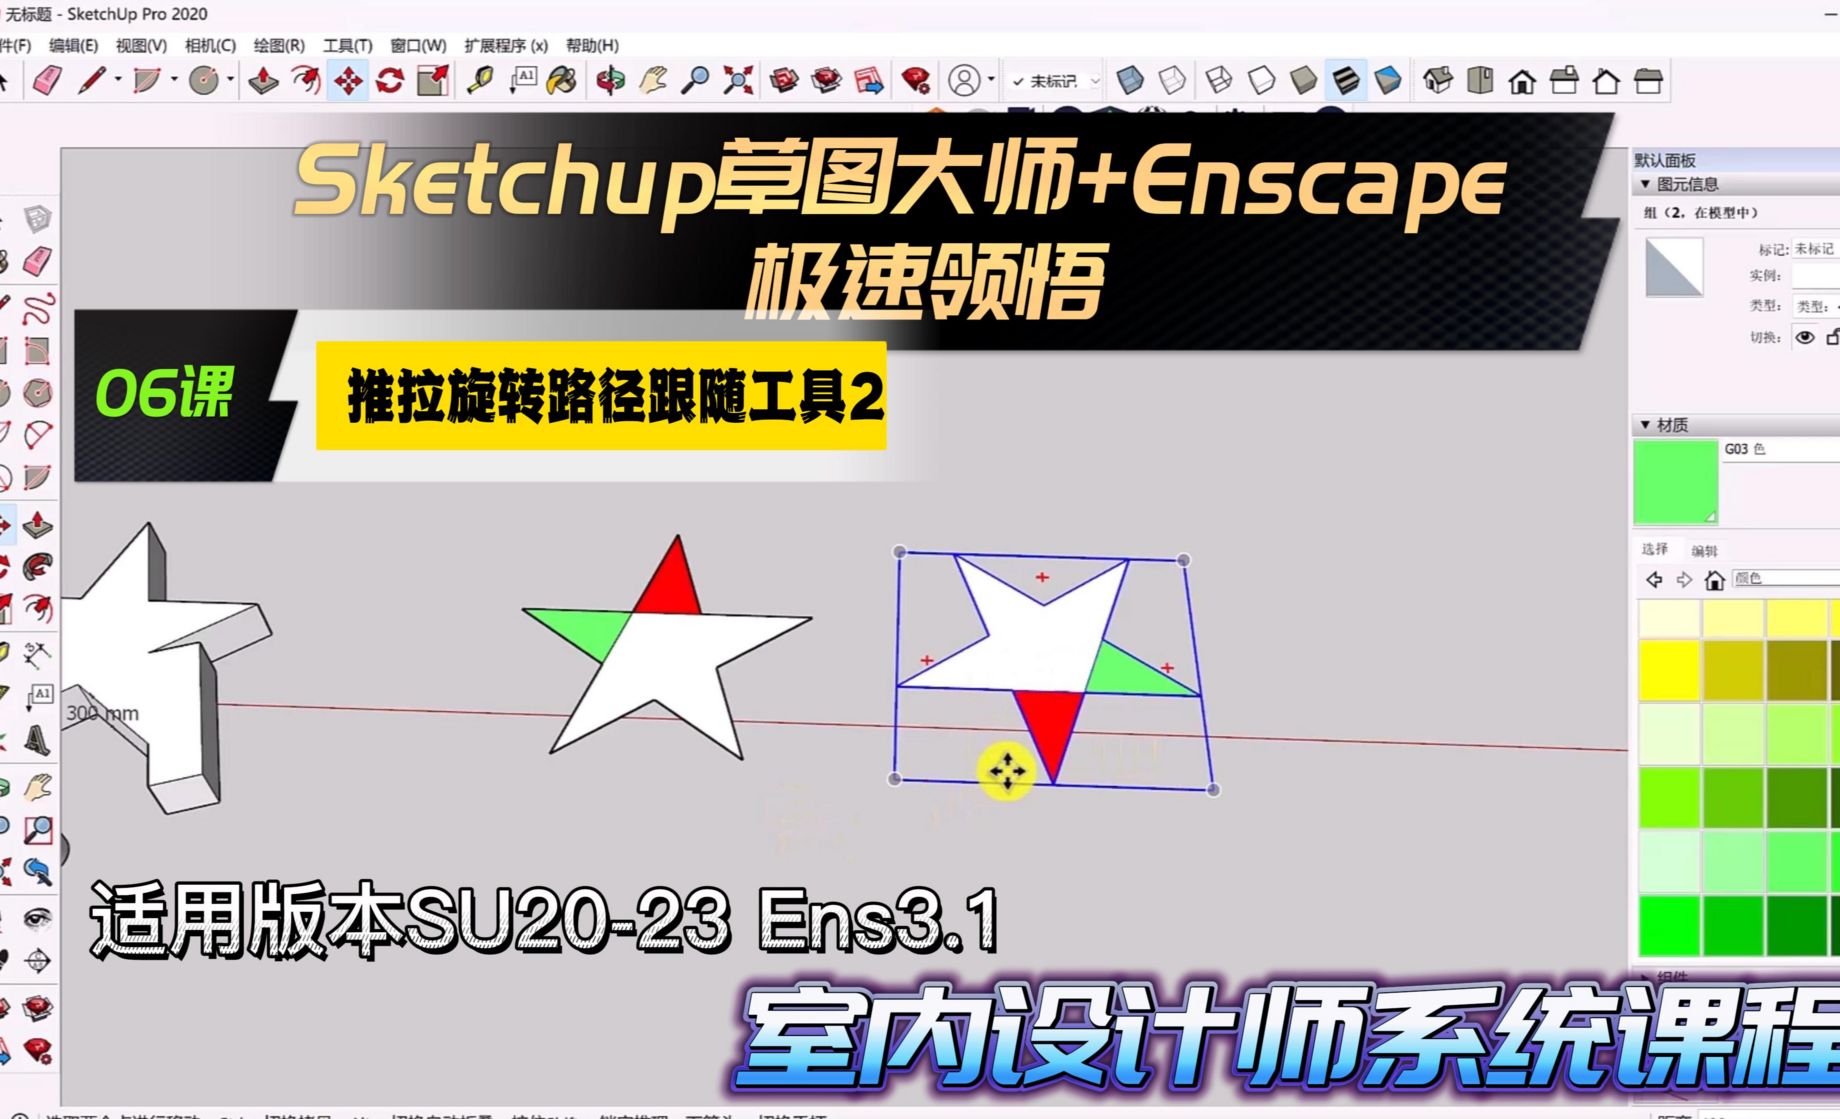 Sketchup+Enscape室内设计极速领悟-推拉/旋转/路径跟随工具2